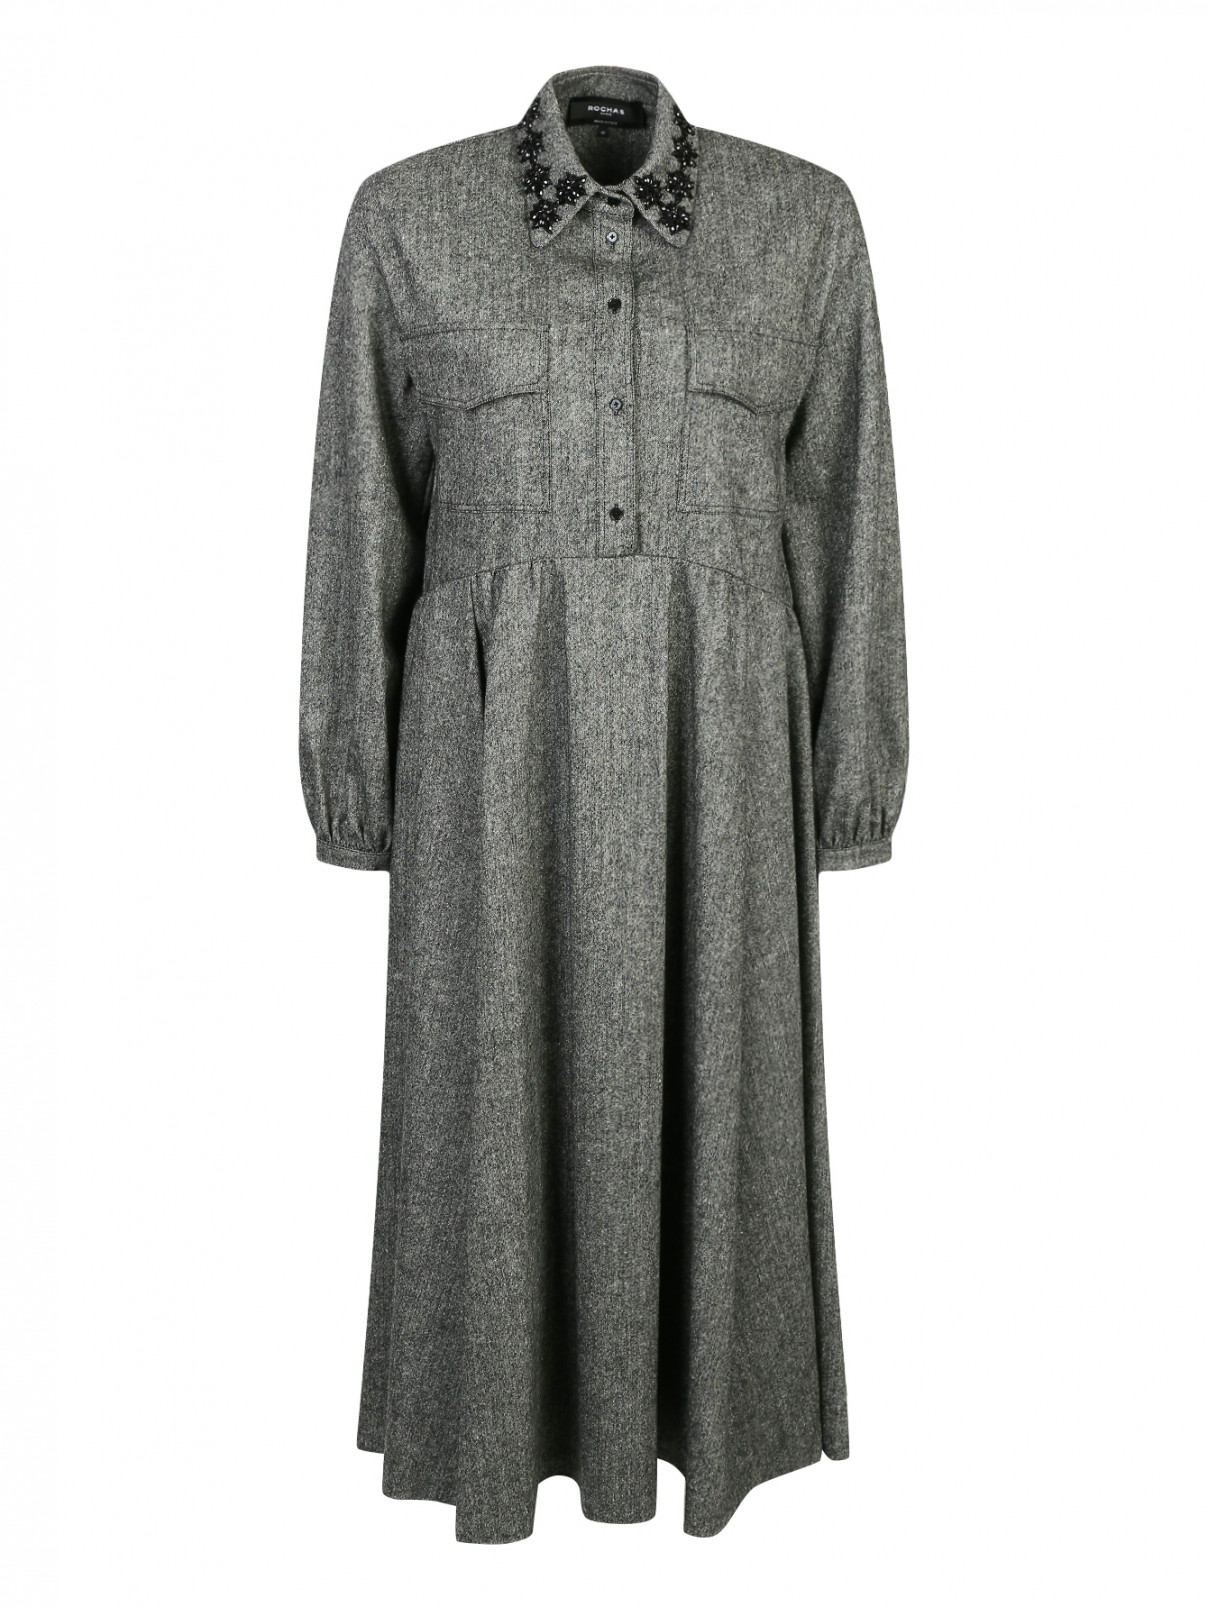 Платье из шерсти с камнями на воротнике Rochas  –  Общий вид  – Цвет:  Серый